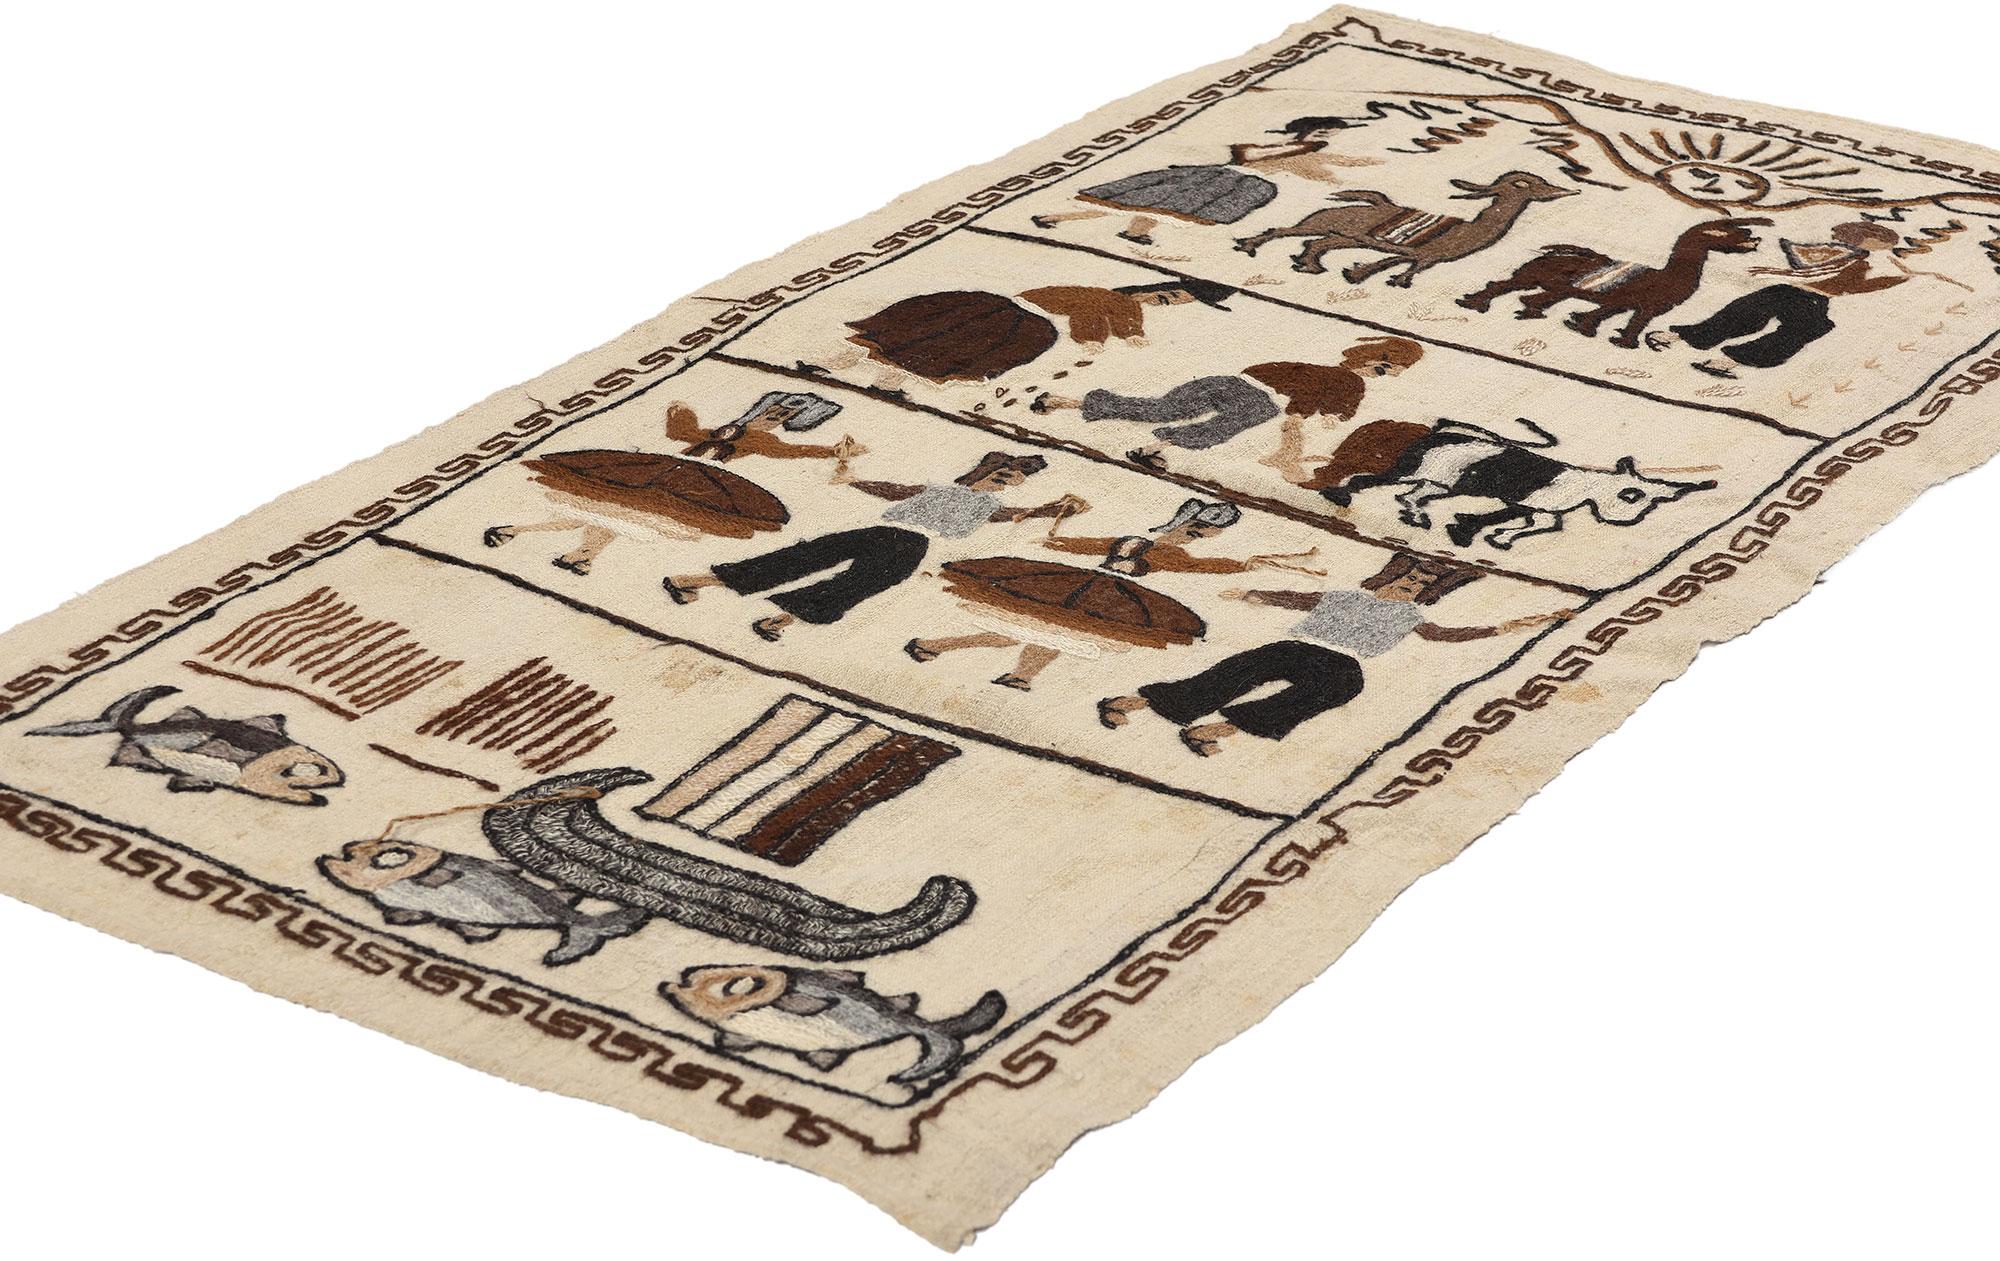 78756 Tapisserie péruvienne vintage brodée à la main, 02'02 x 04'07. Les tapisseries péruviennes brodées à la main sont des œuvres d'art textiles complexes réalisées par des artisans qualifiés, qui mettent en valeur le patrimoine culturel vibrant du